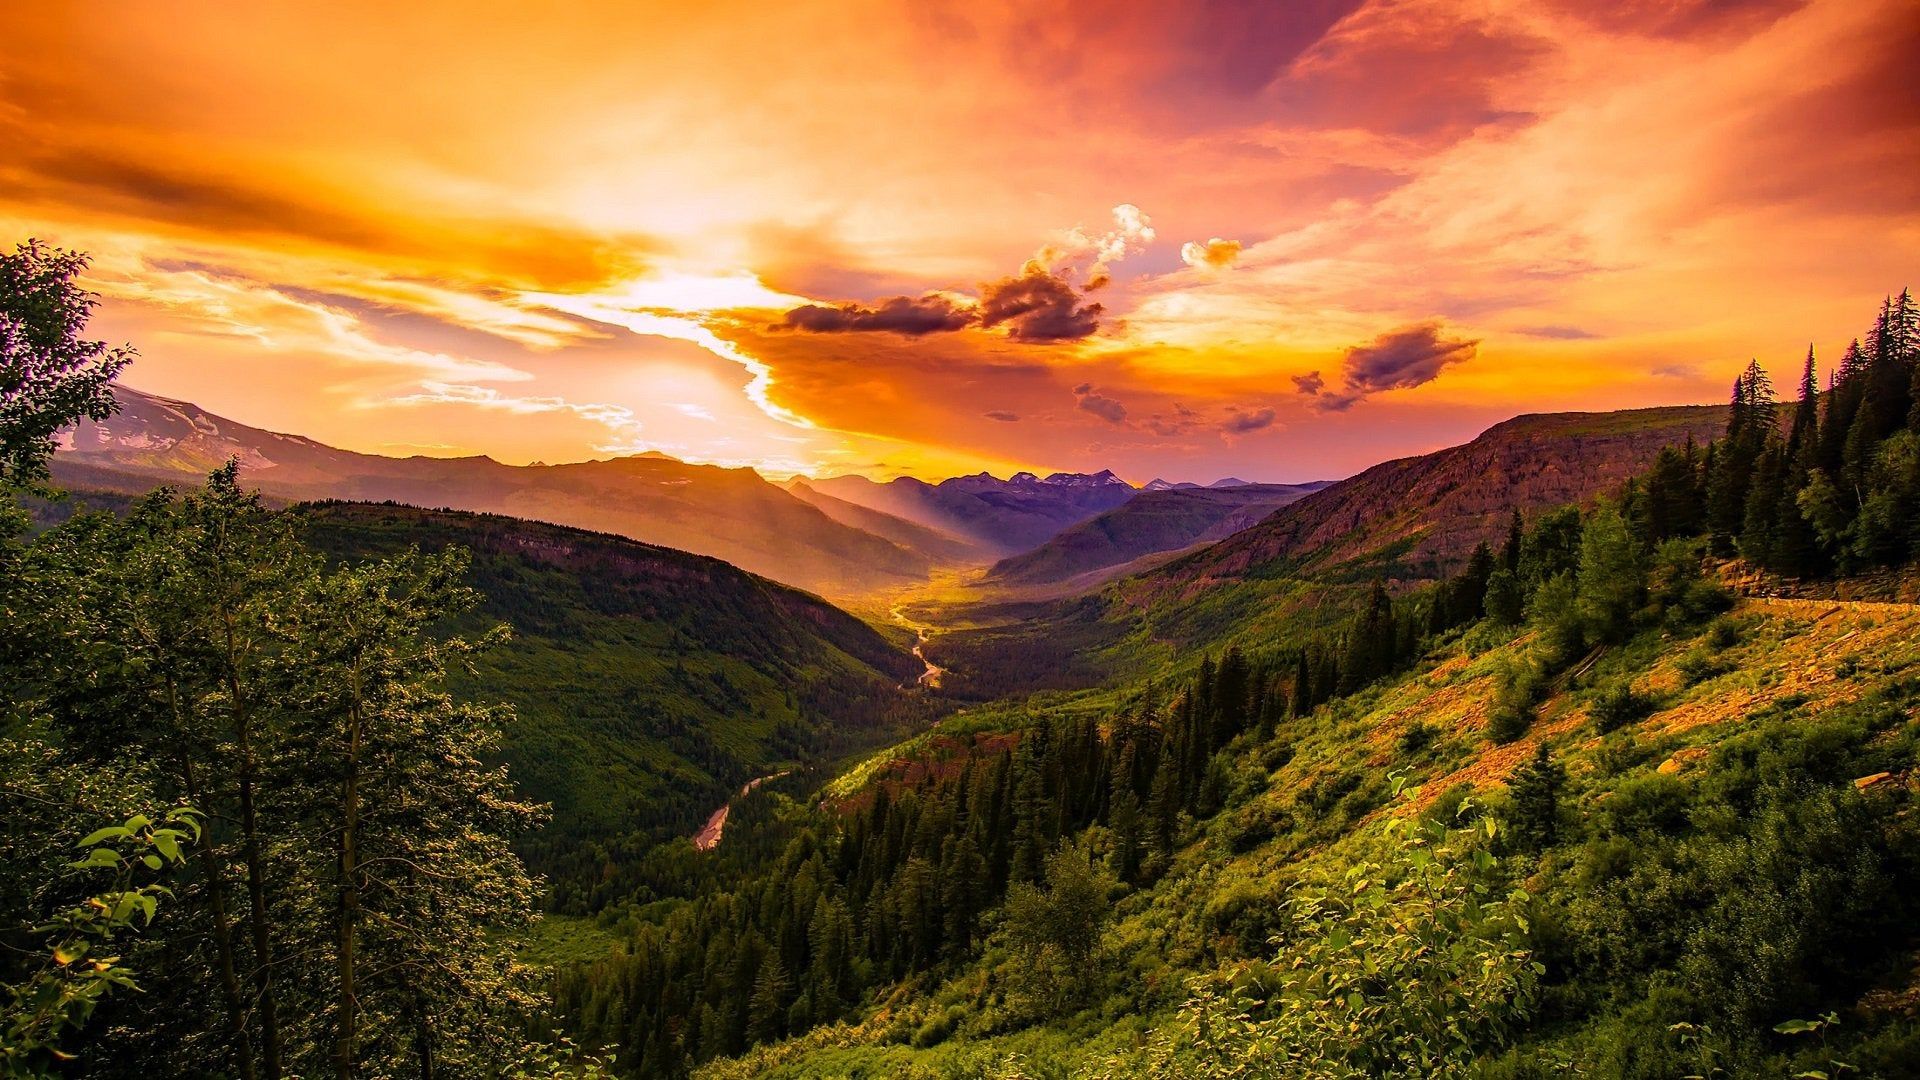 Mountain valley sunrise (1920x1080)